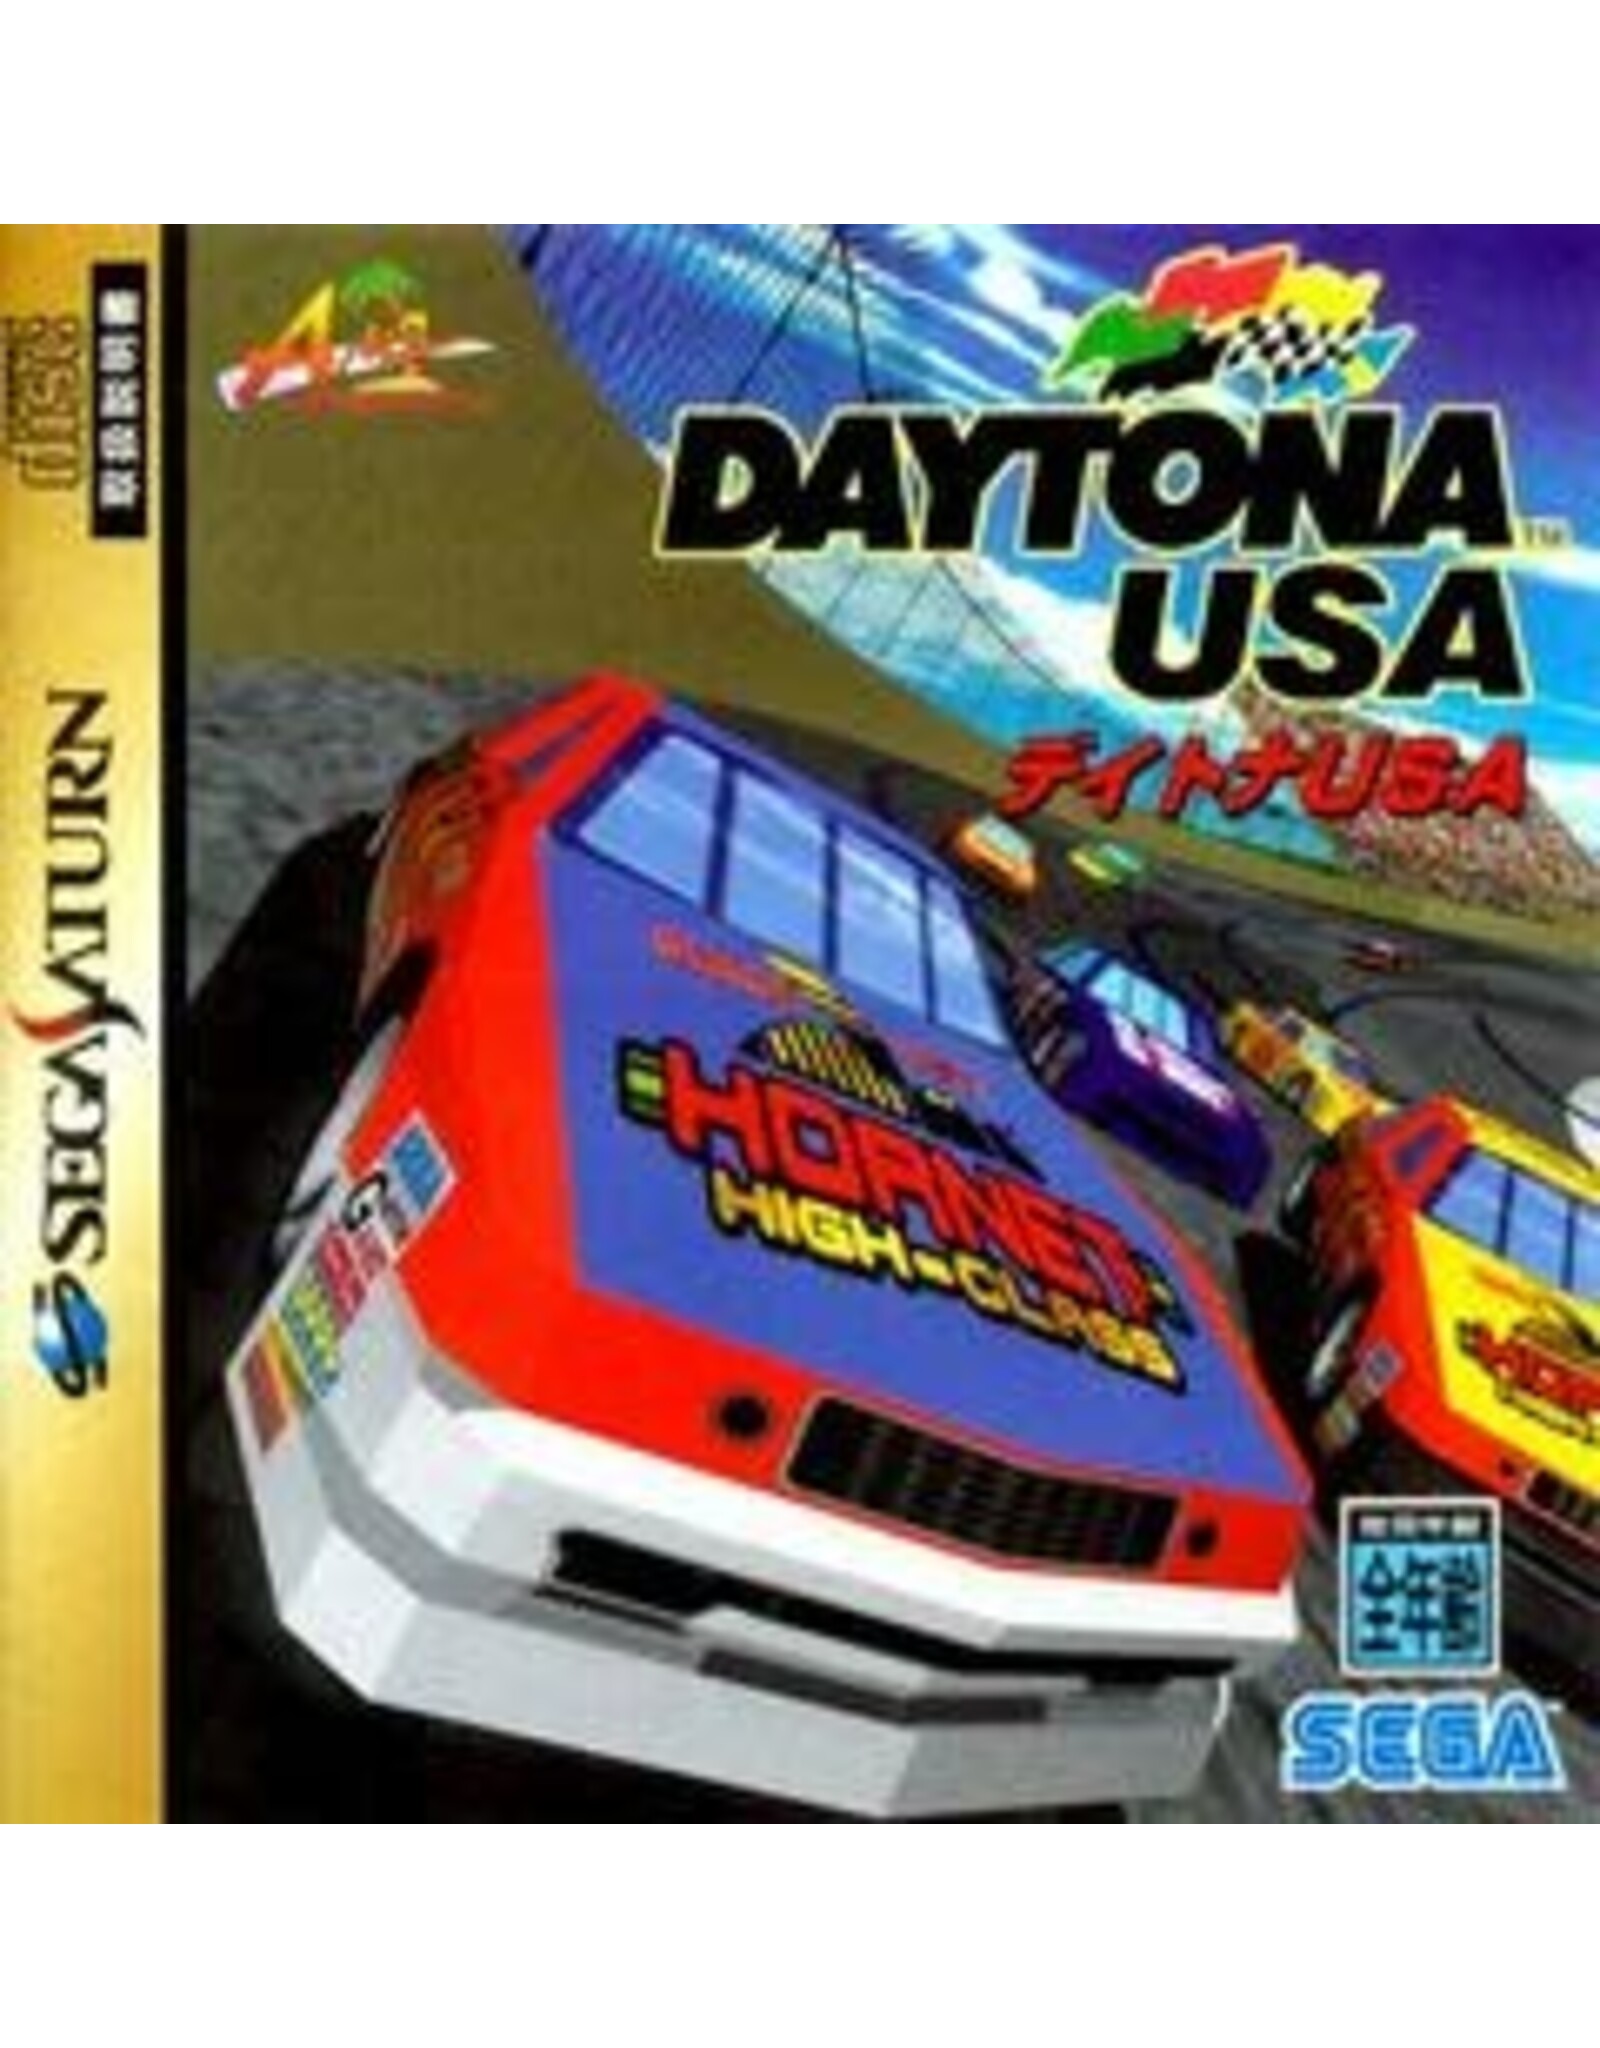 Sega Saturn Daytona USA - JP Import (Used)